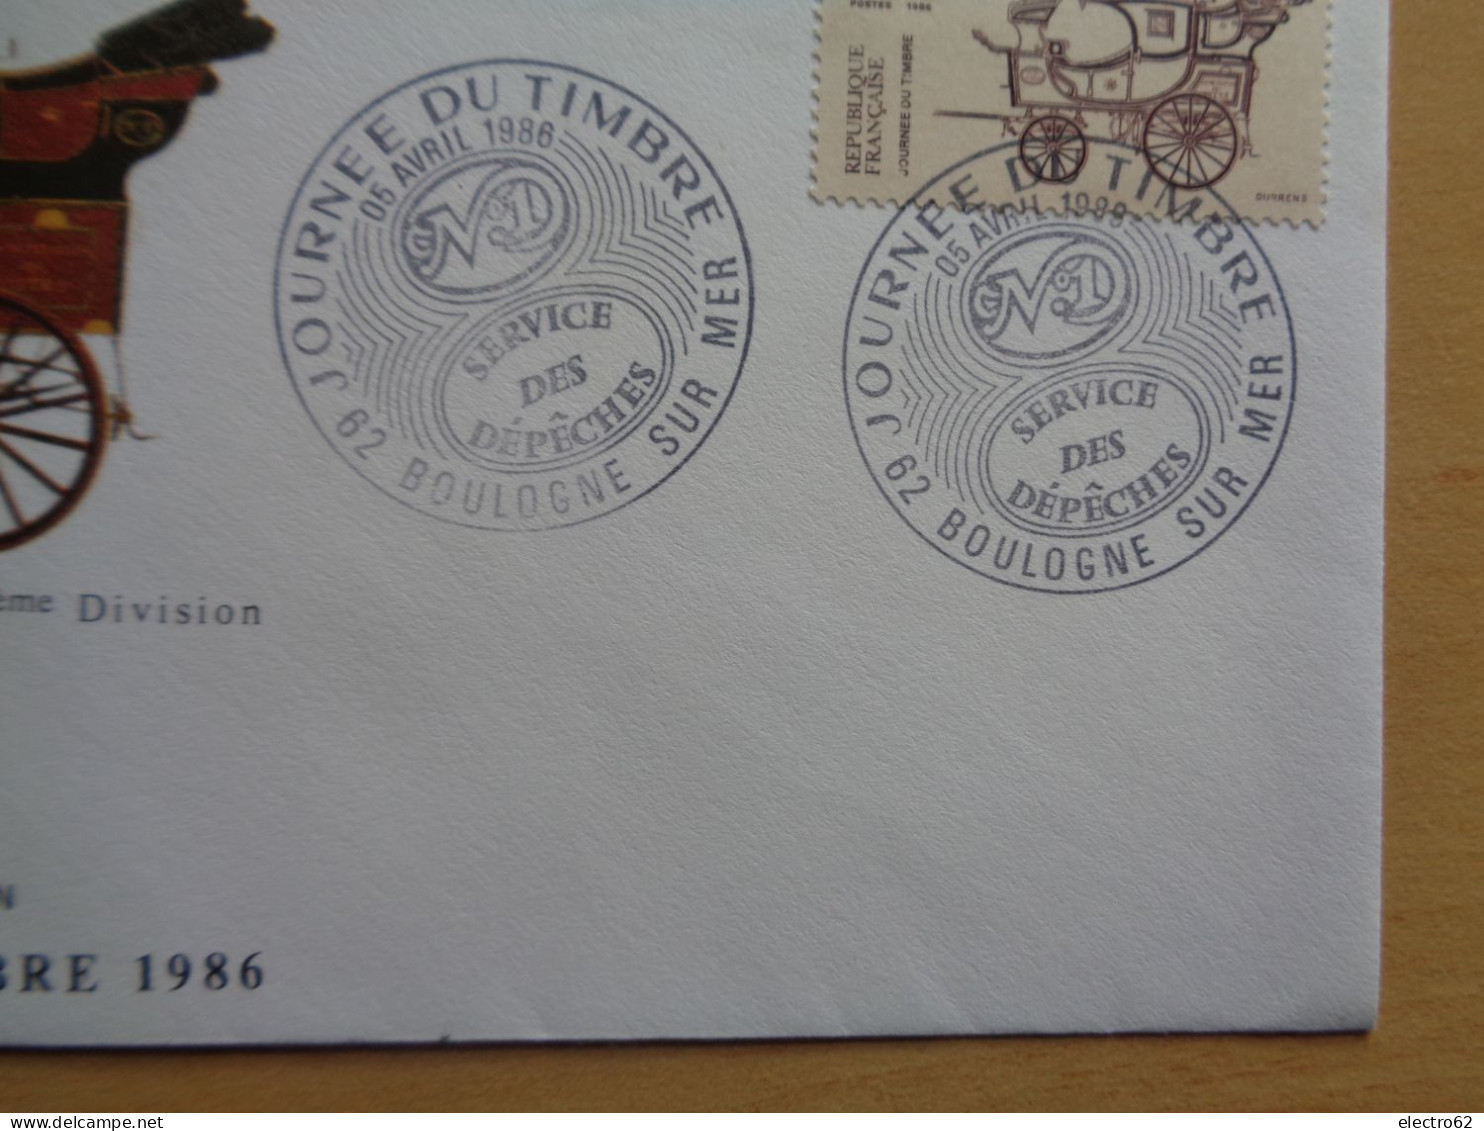 Journée Du Timbre Poste Malle-poste Briska El Correo Das Postamt The Post Office Service Des Dépêches 1986 FDC - Diligences